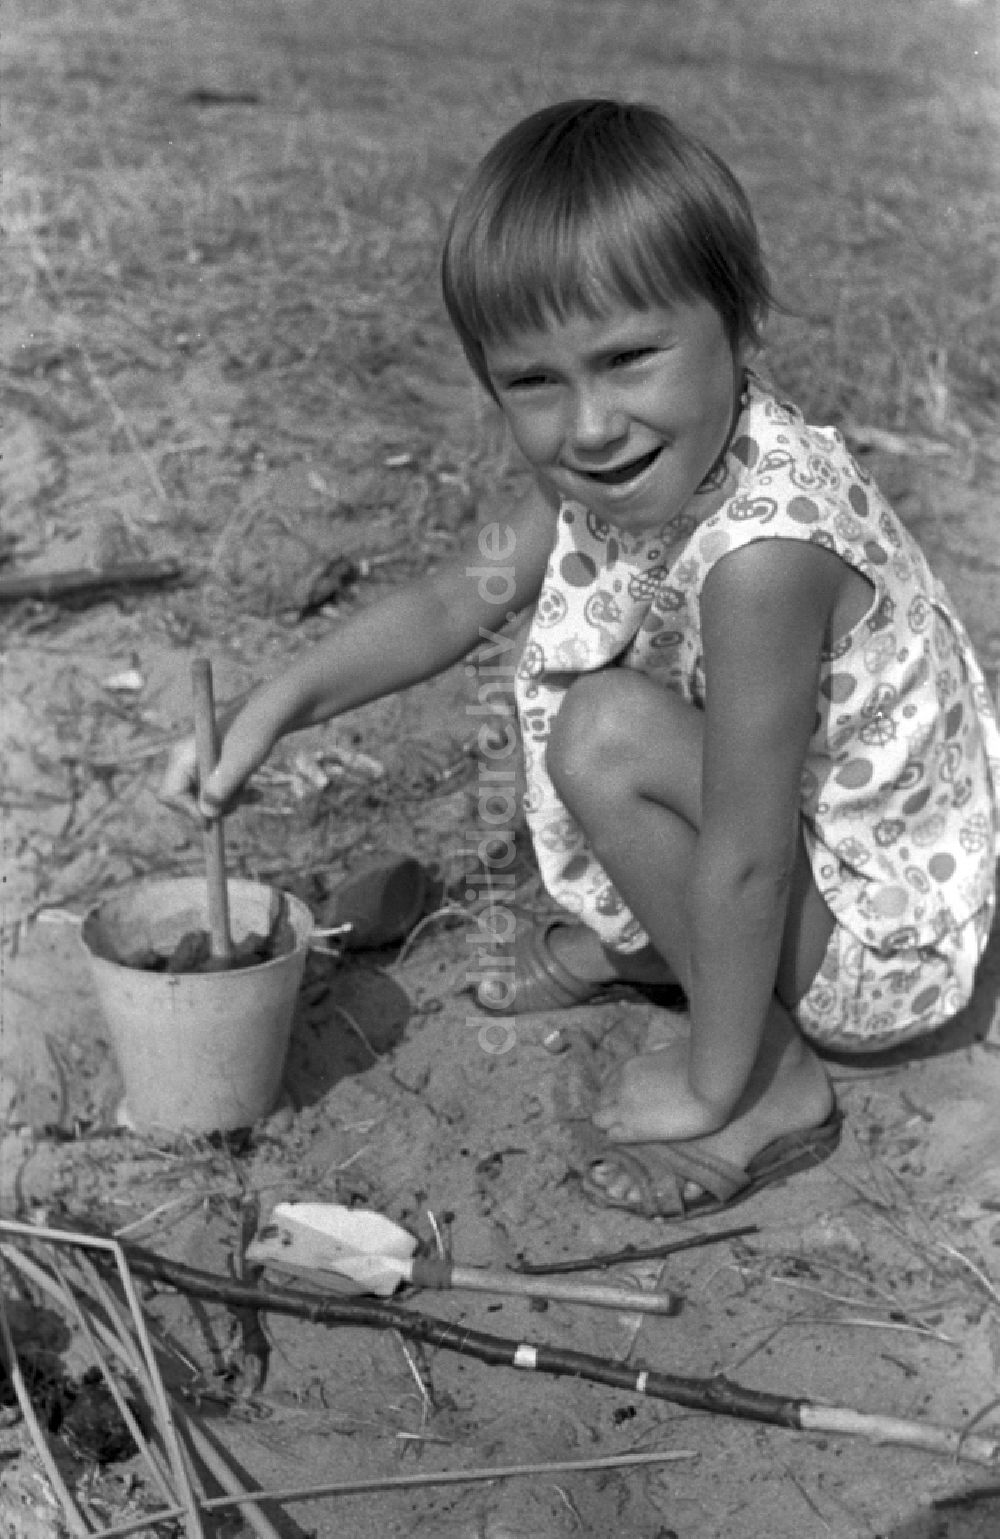 DDR-Fotoarchiv: Neuruppin OT Stendenitz - Ein kleines Kind spielt mit einem Eimer im Sand in Brandenburg